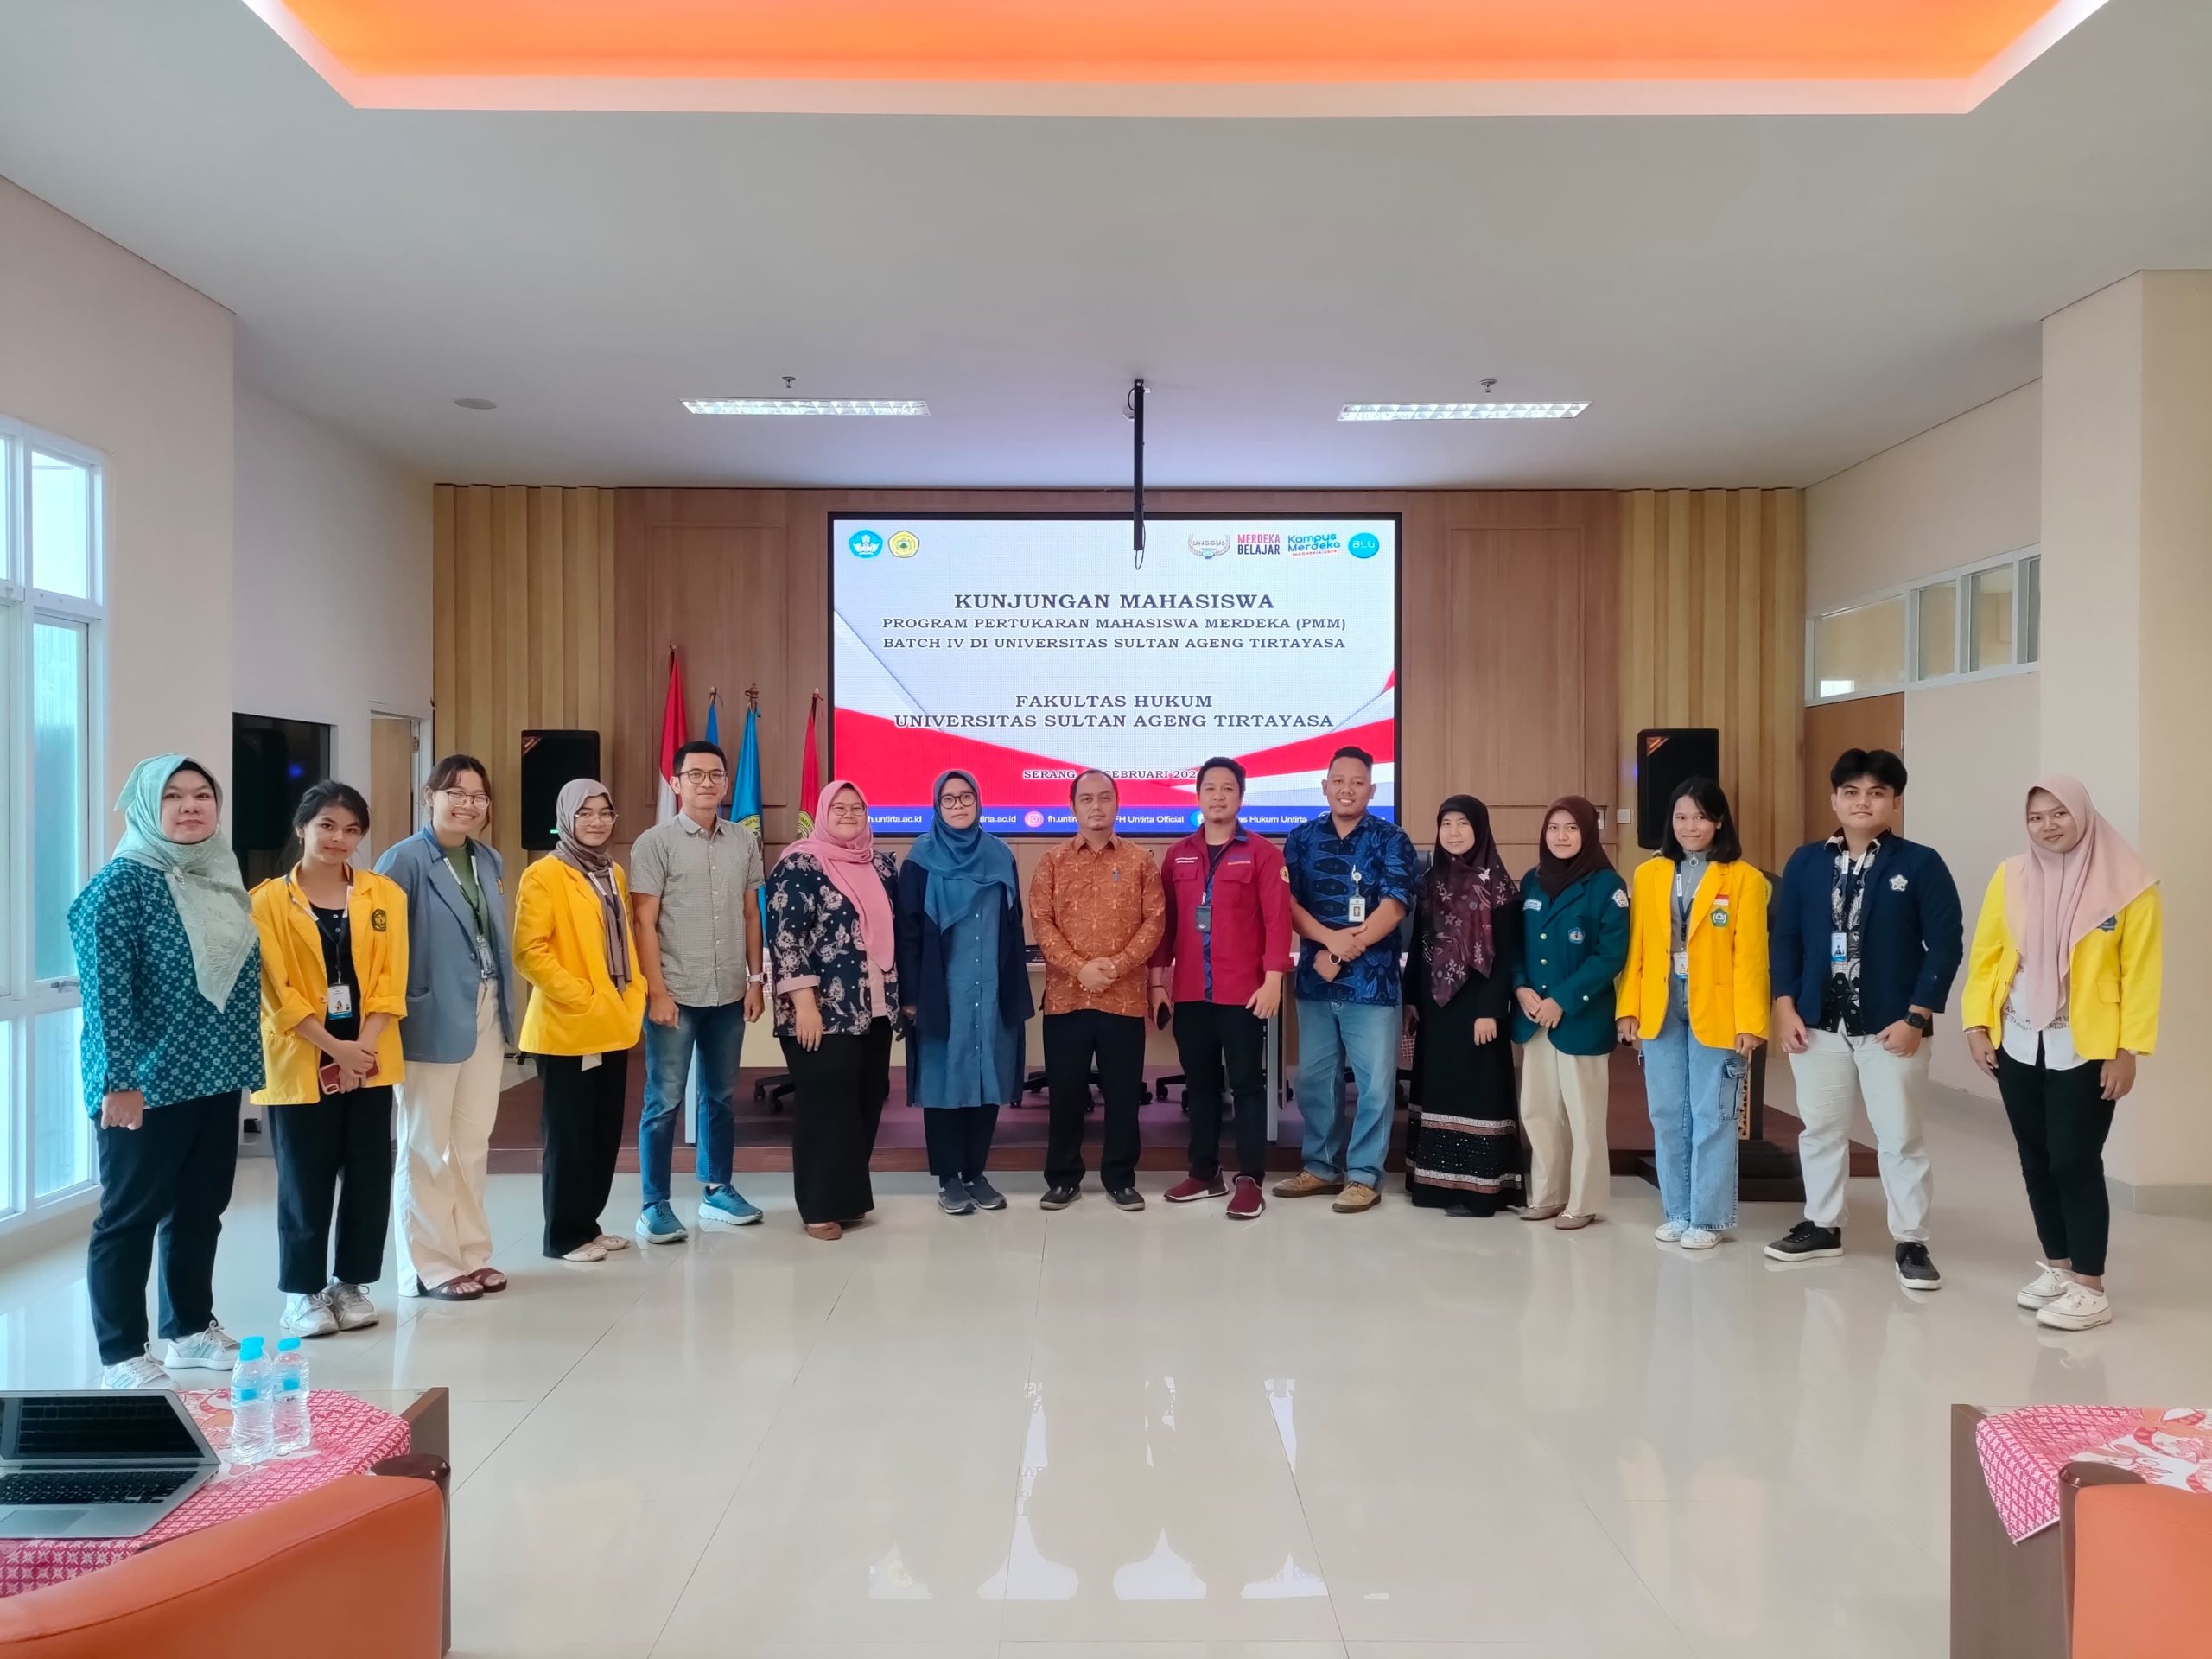 Kunjungan Mahasiswa Program Pertukaran Mahasiswa Merdeka (PMM) Batch IV Di Universitas Sultan Ageng Tirtayasa